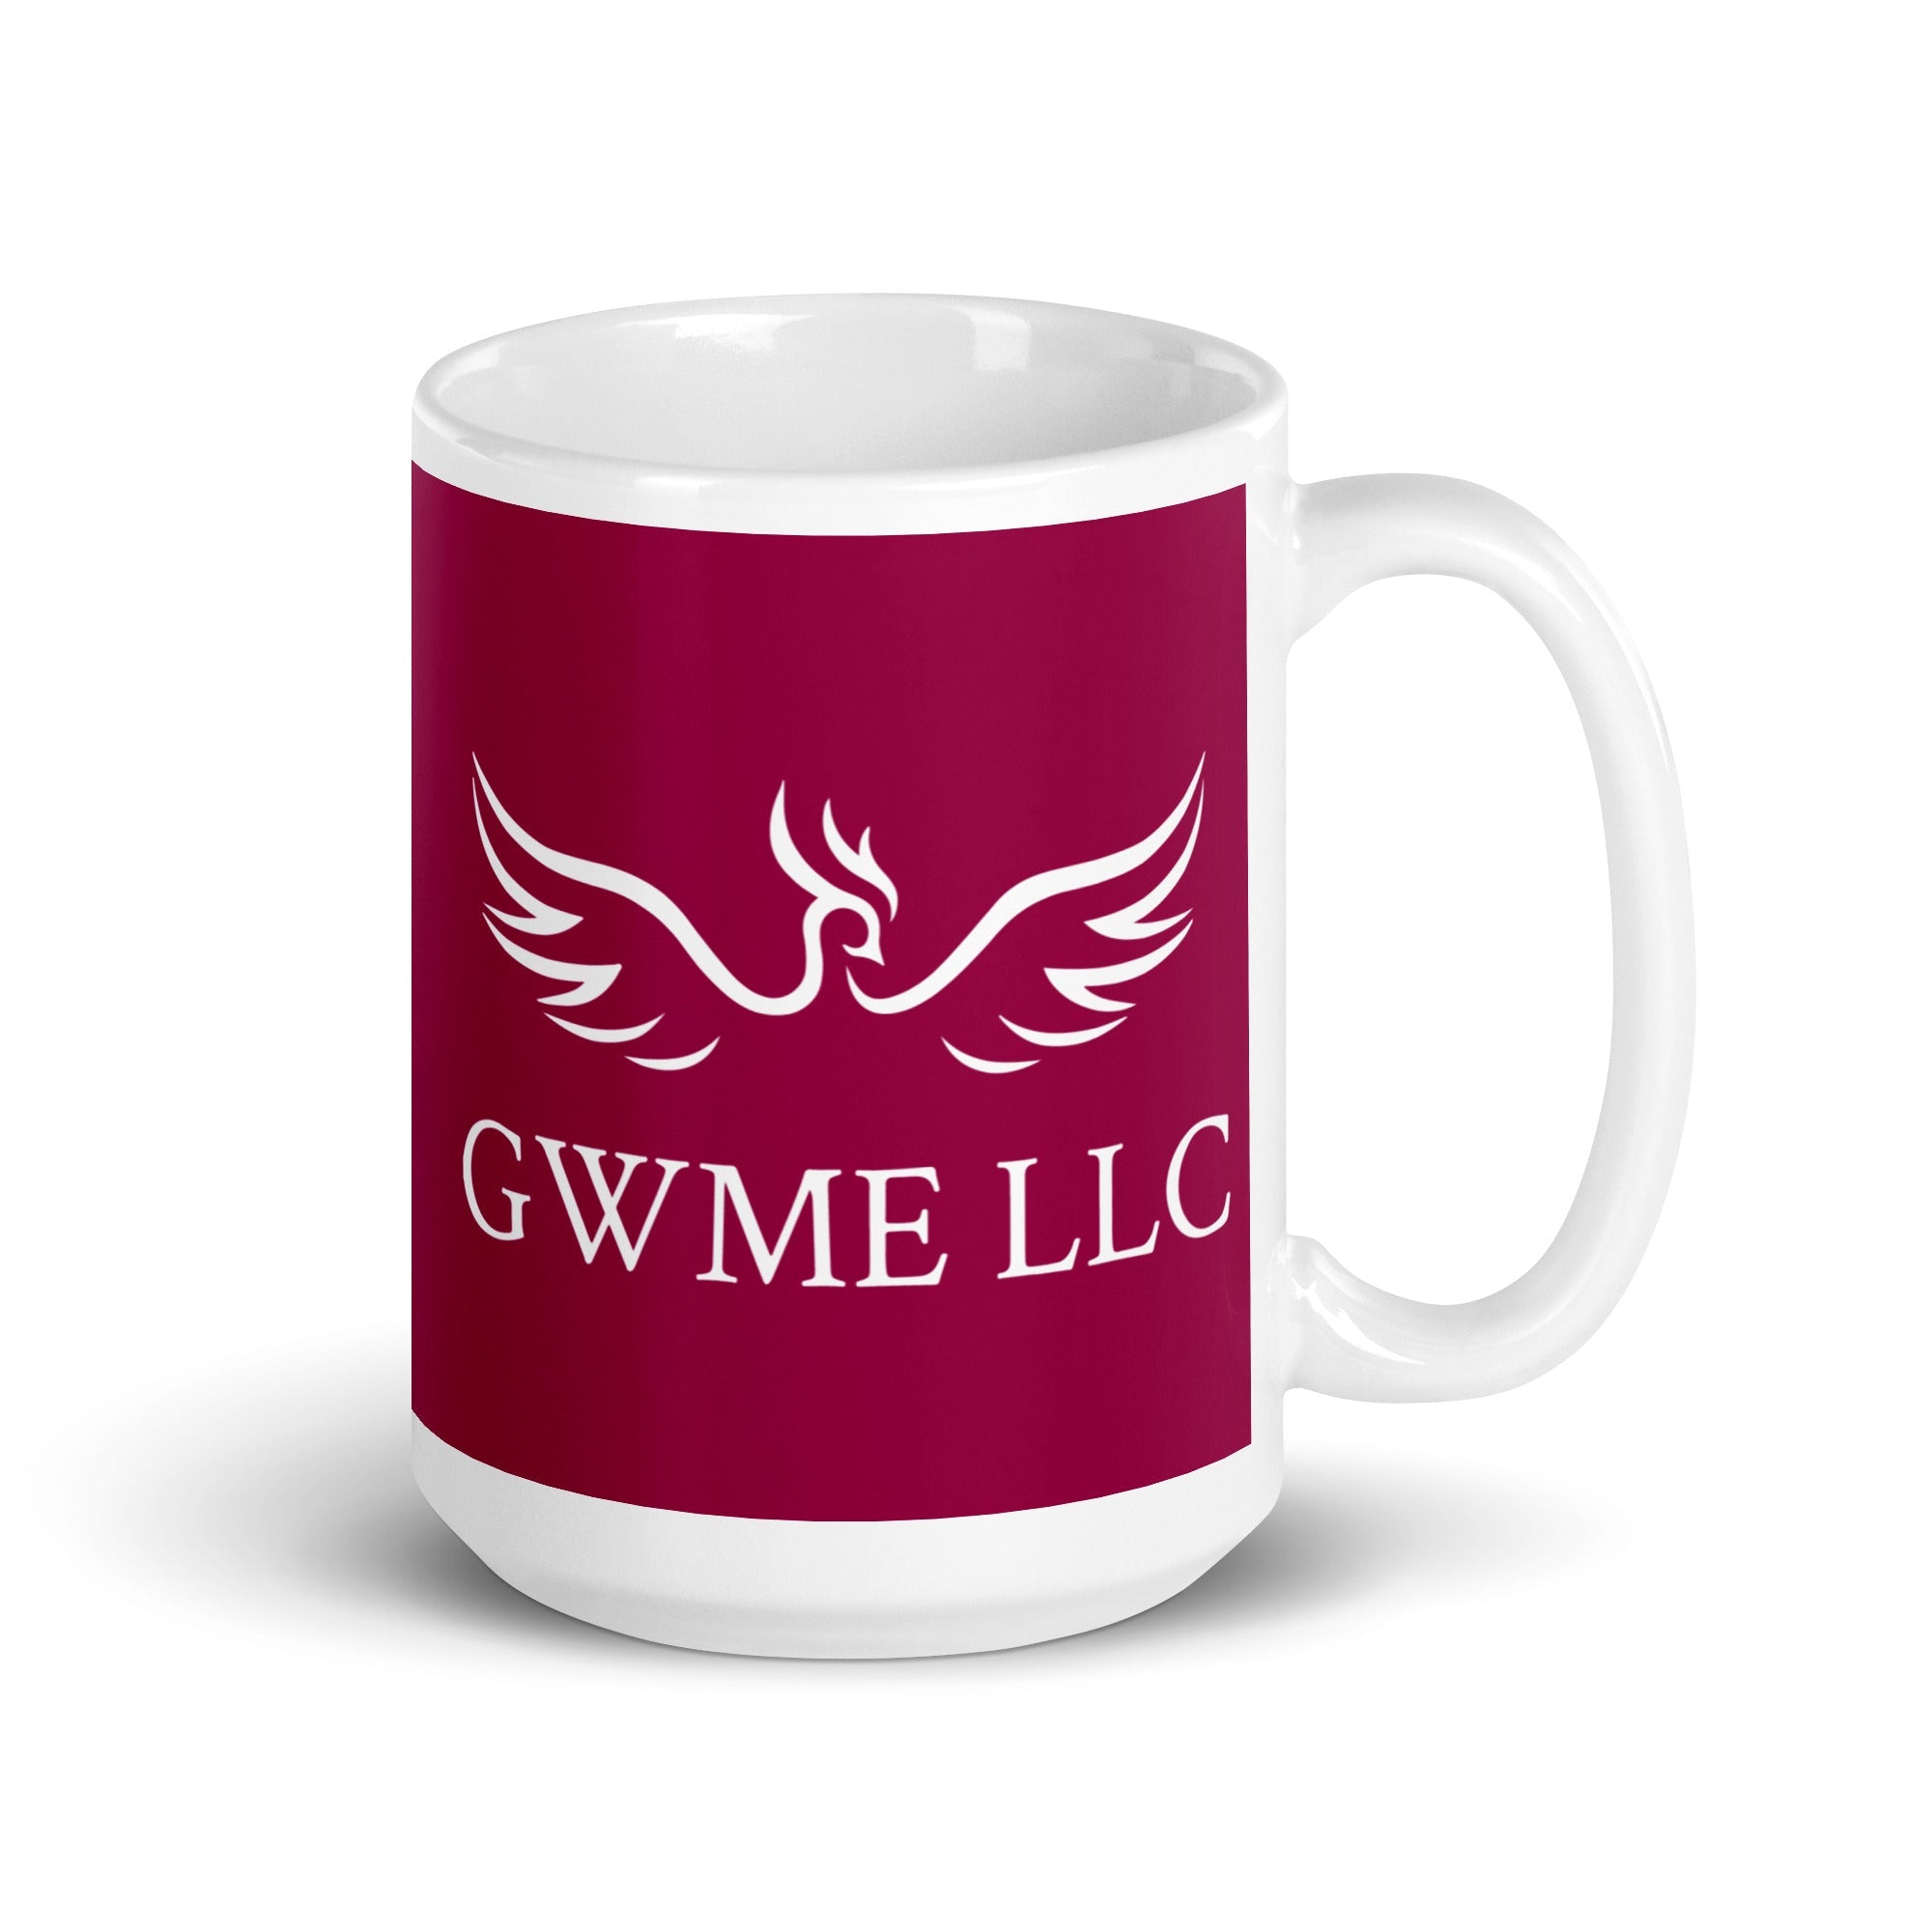 GWME White glossy mug